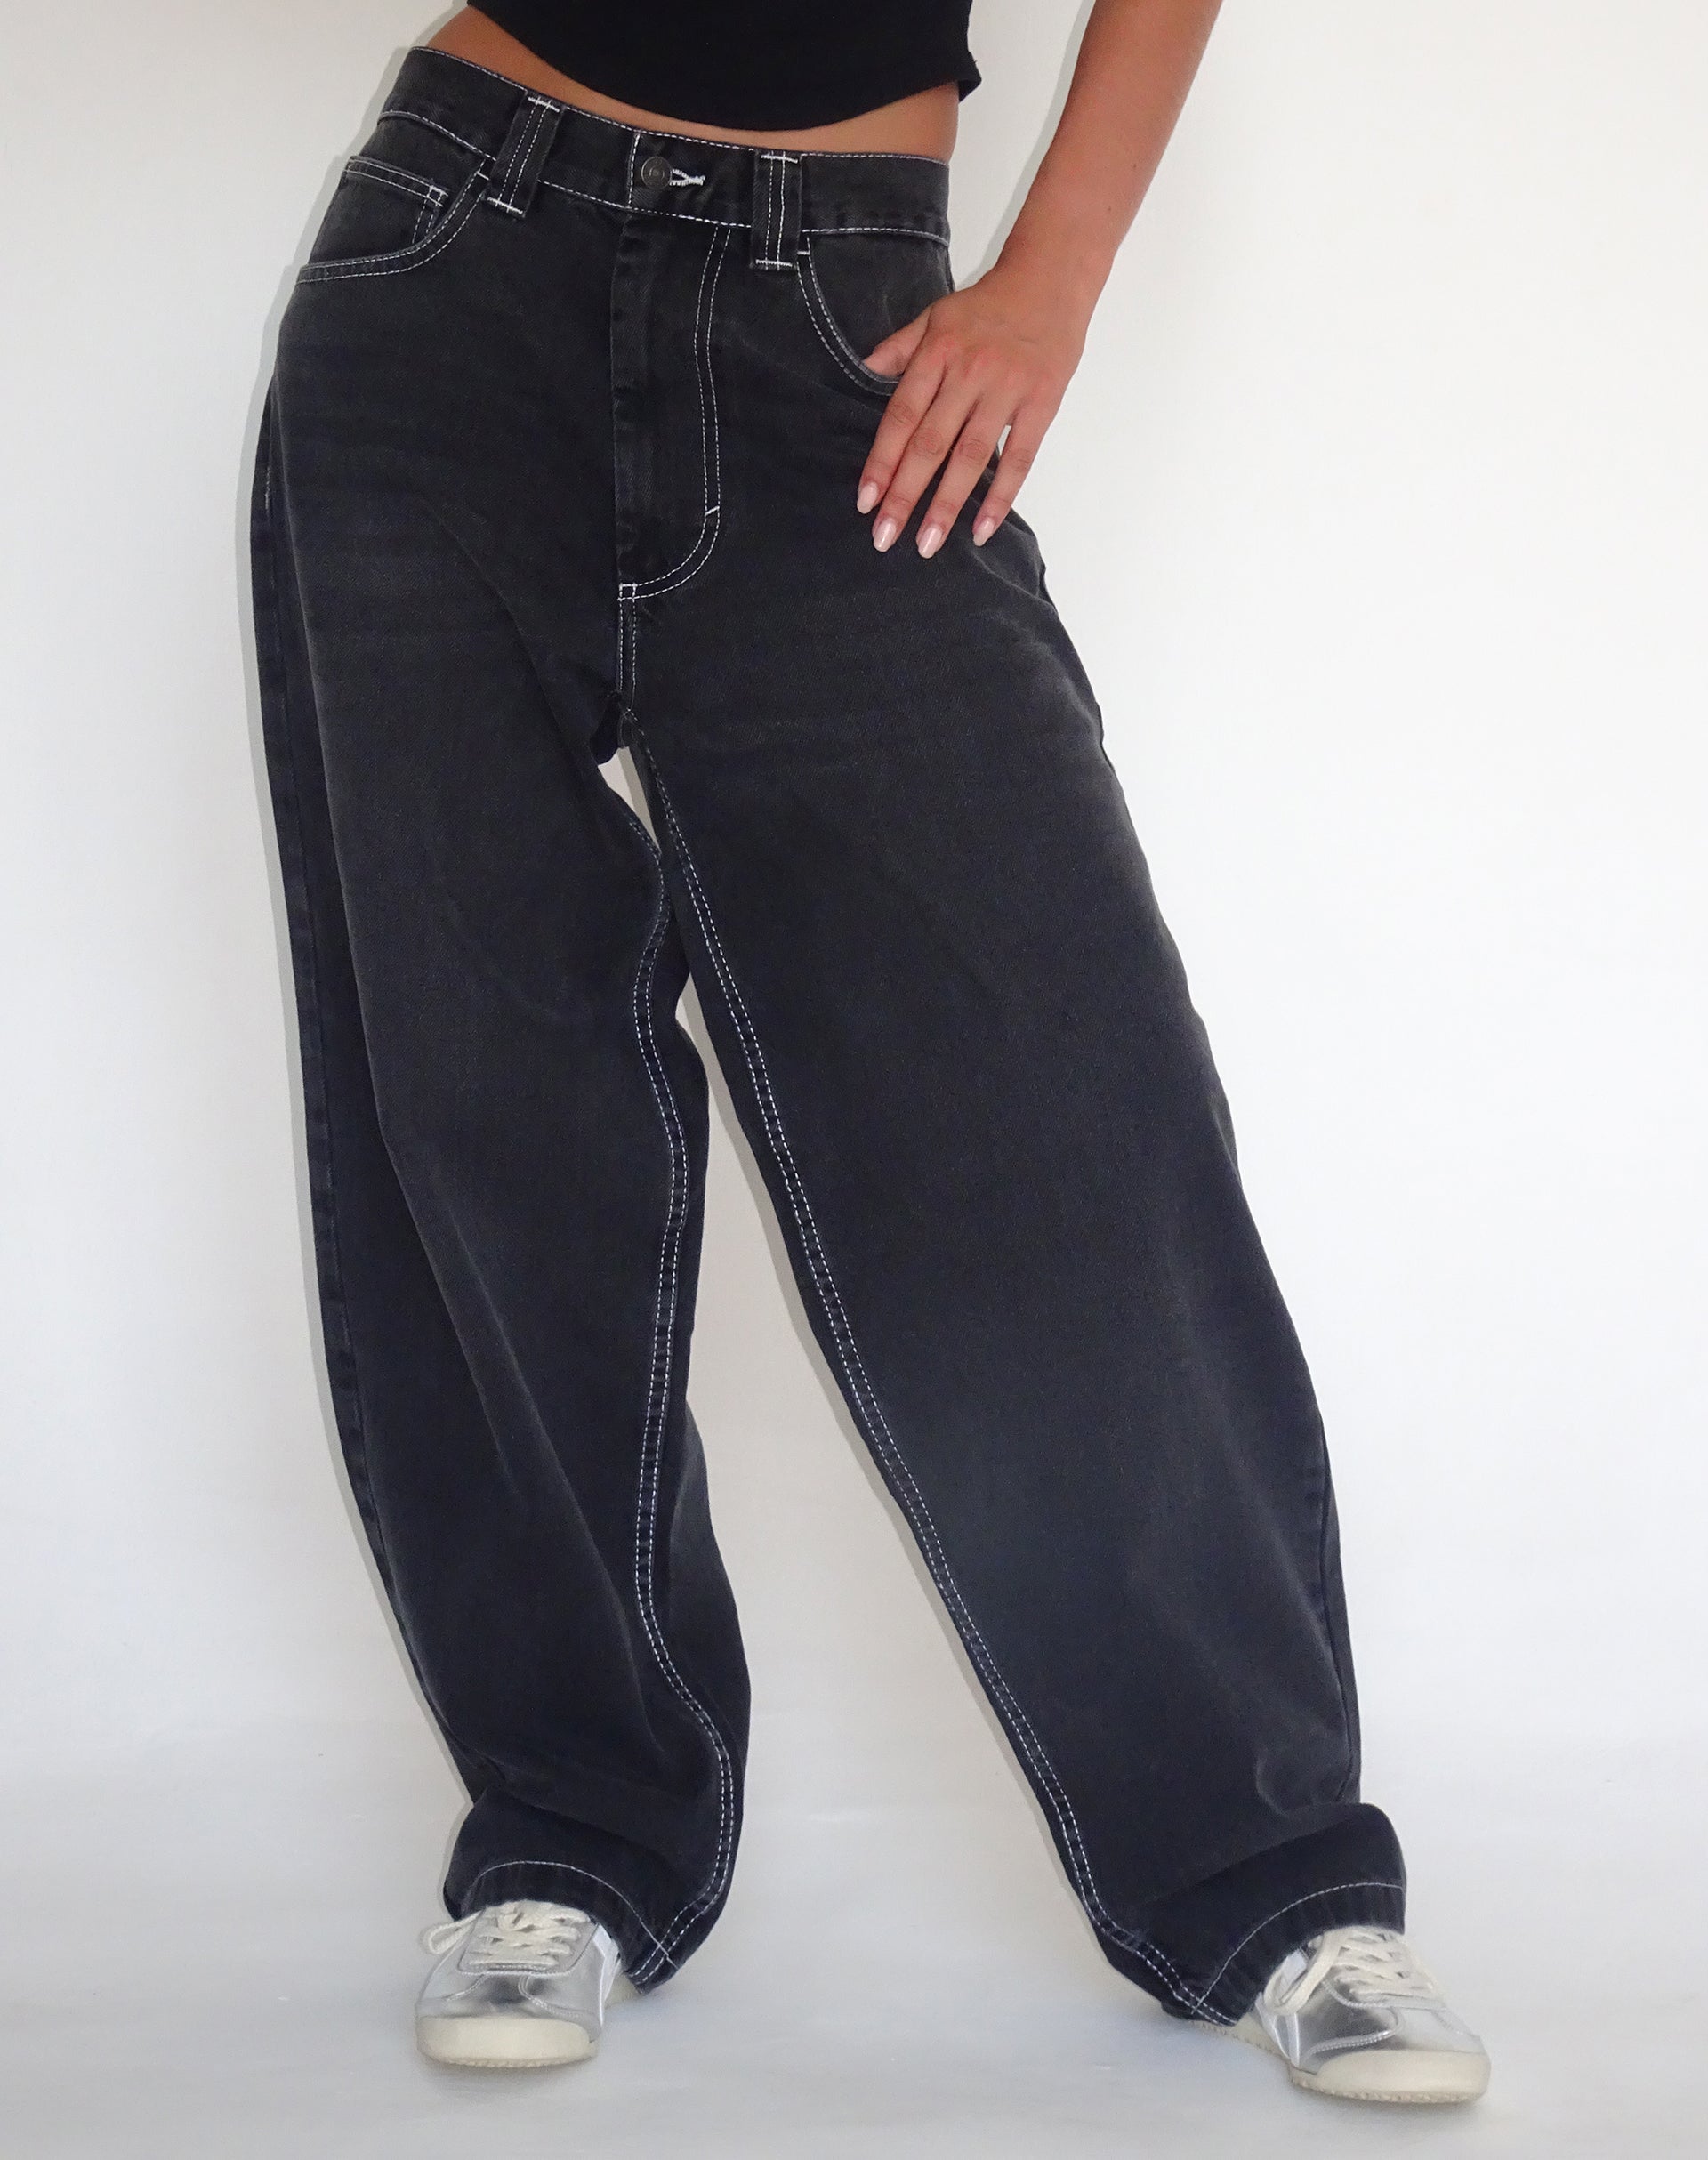 Imagen de Skater Low Rise Jean en negro vintage con puntada superior blanca